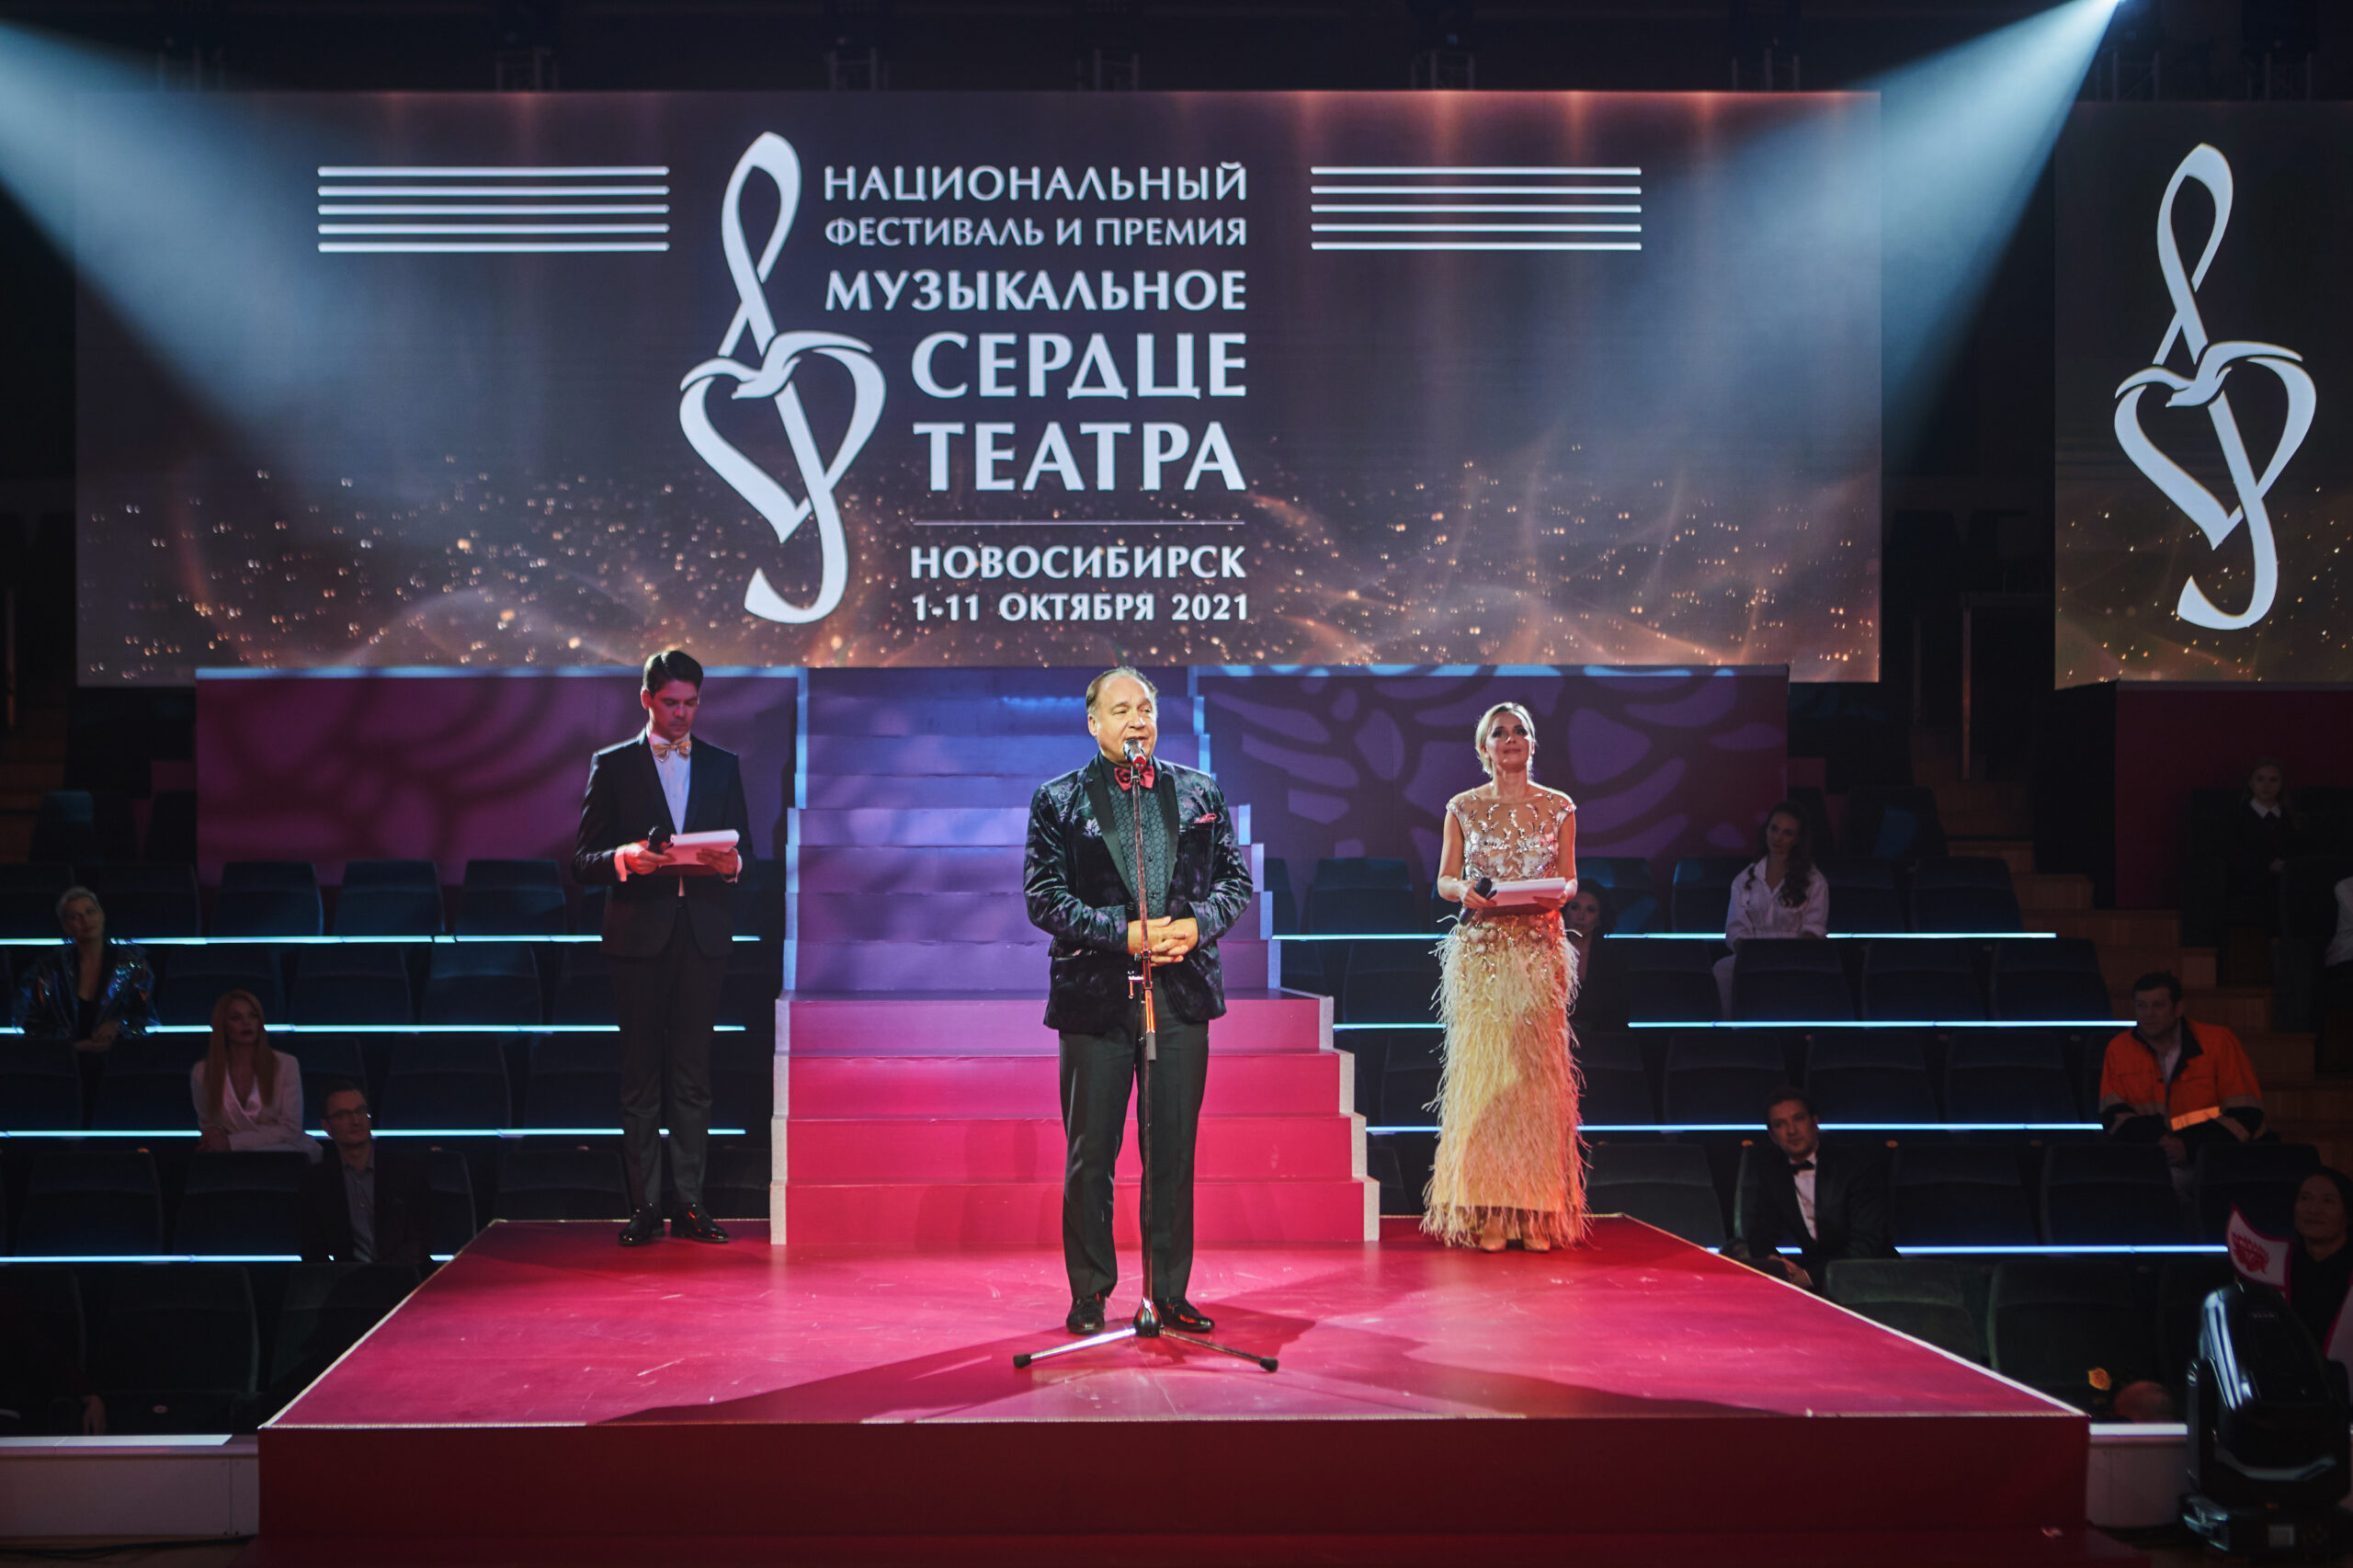 Объявлены победители премии «Музыкальное сердце театра»